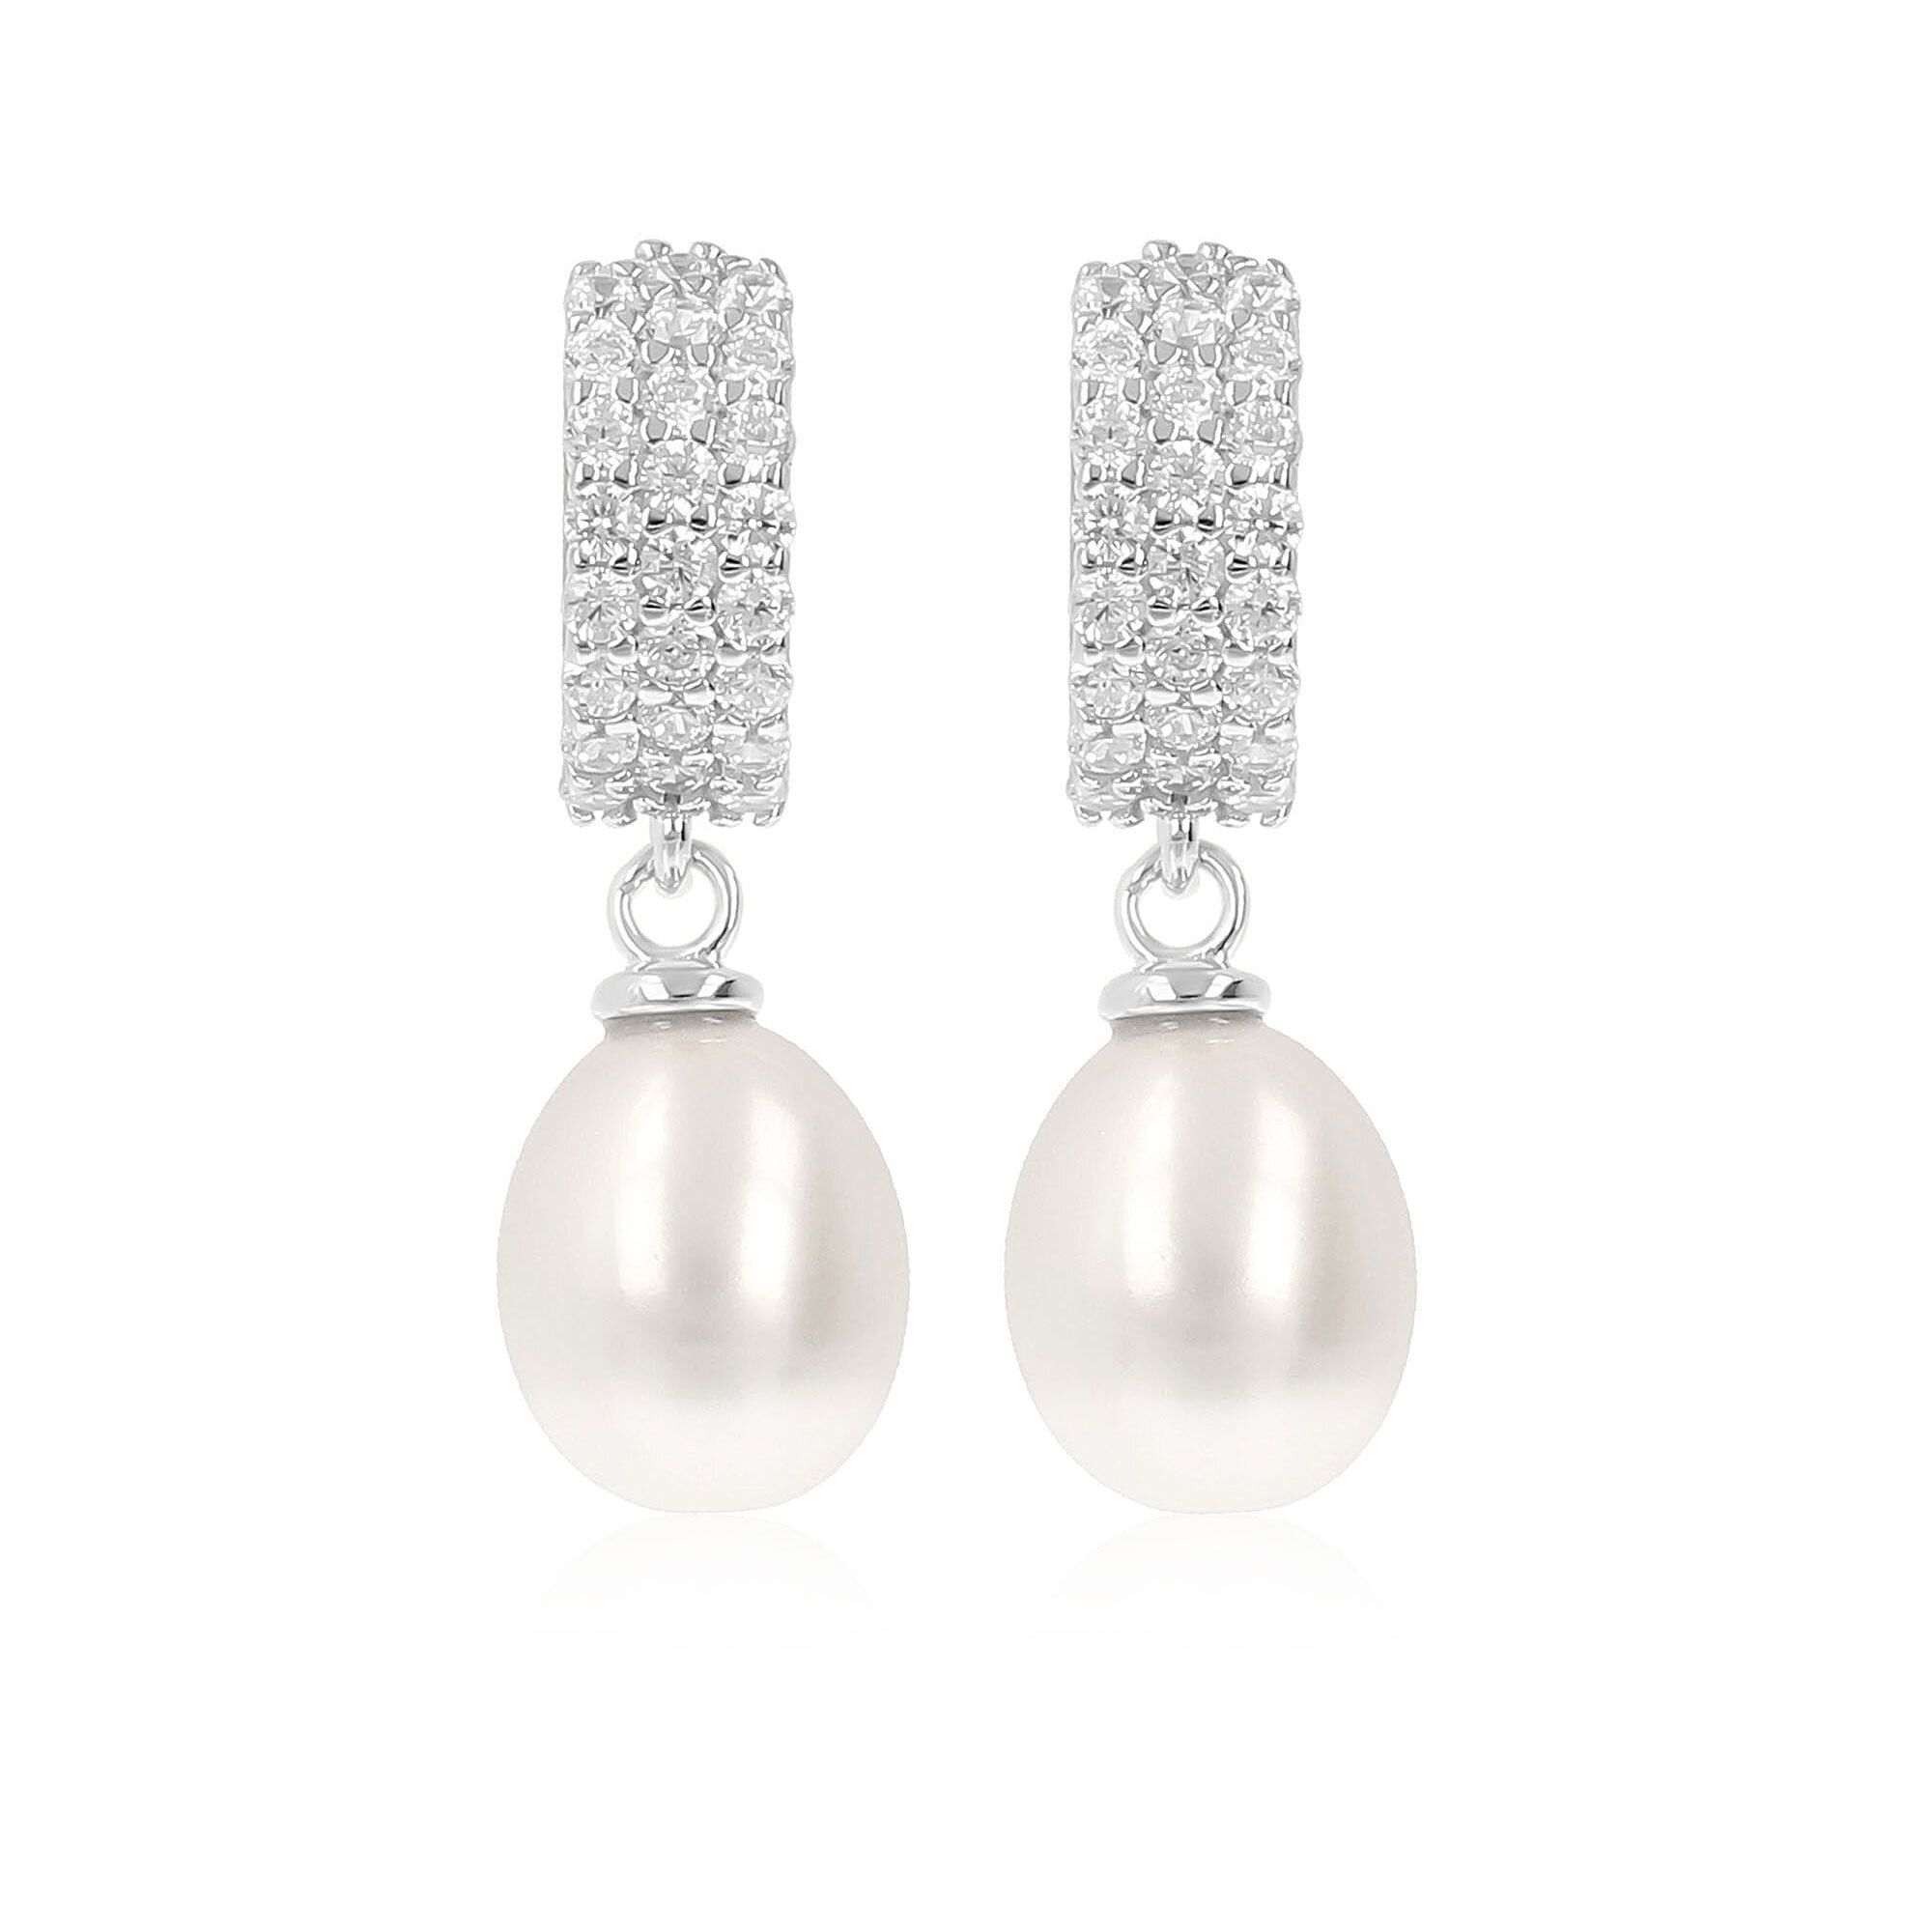 Orecchini pendenti argento 925 con perle e zirconie